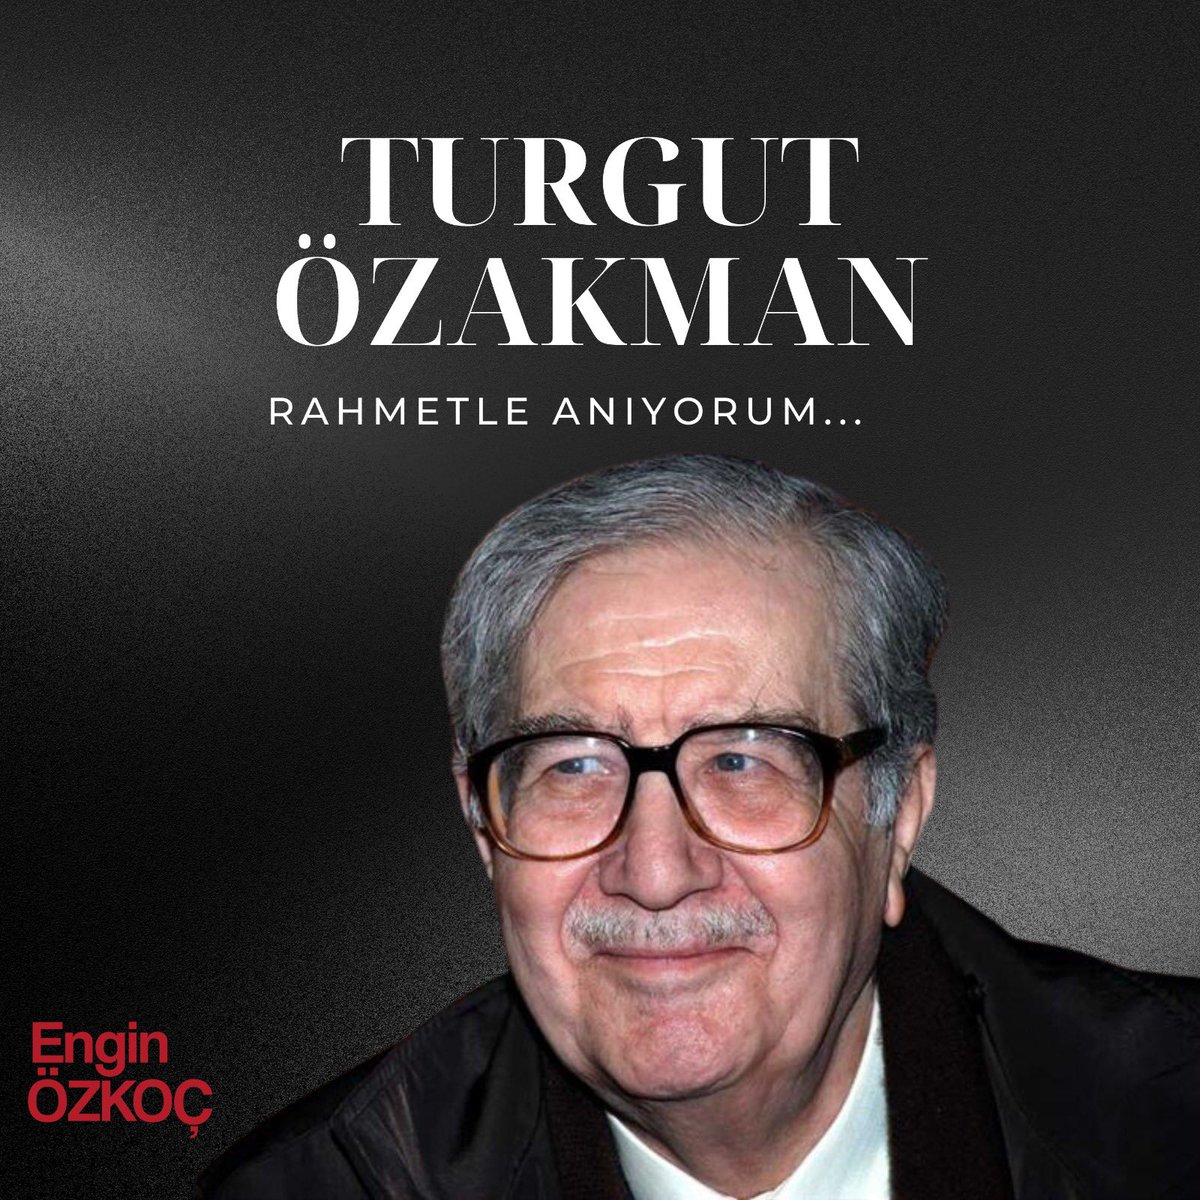 “Neyimiz varsa Atatürk’ün getirdiği Cumhuriyete, ona bağlı devrimlere, kalkınma uğraşlarına ve başarılarına bağlı. Bu borcu ödemek kolay değil.” Aramızdan ayrılışının 10. yılında, ülkemizin saygın değerlerinden Turgut Özakman’ı saygıyla anıyorum.